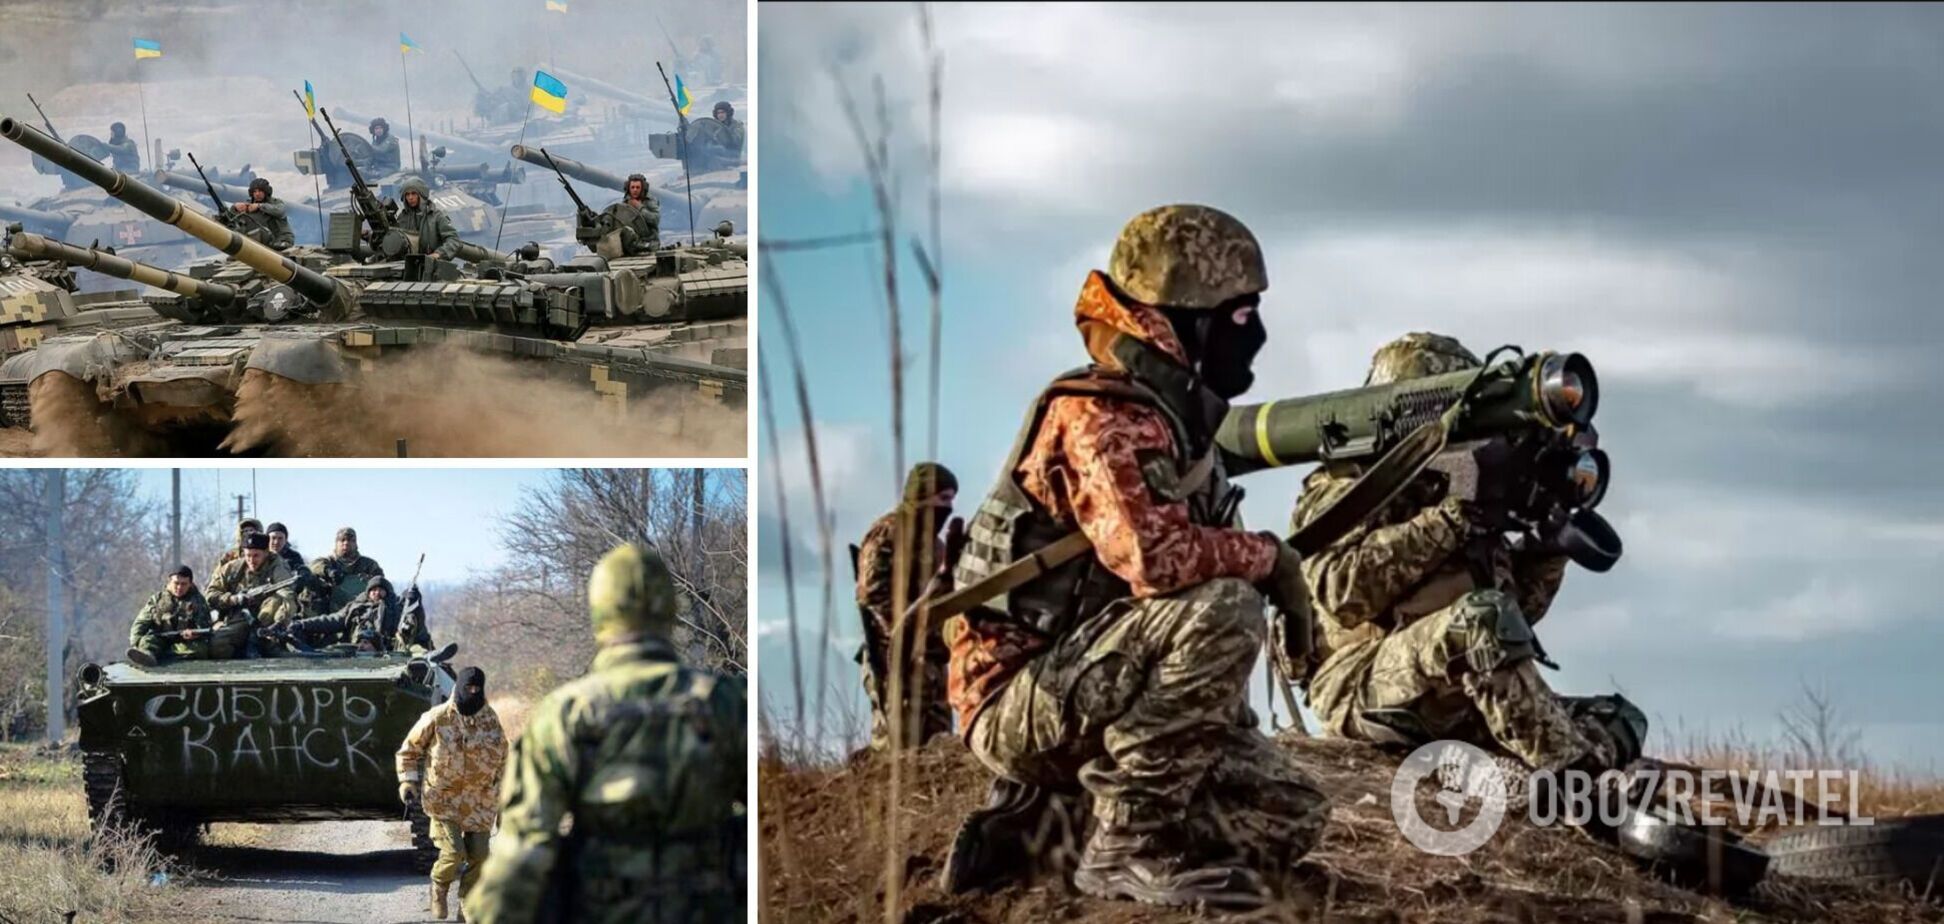 Российские оккупанты пытаются окружить ВСУ на Донбассе: Арестович рассказал о ситуации